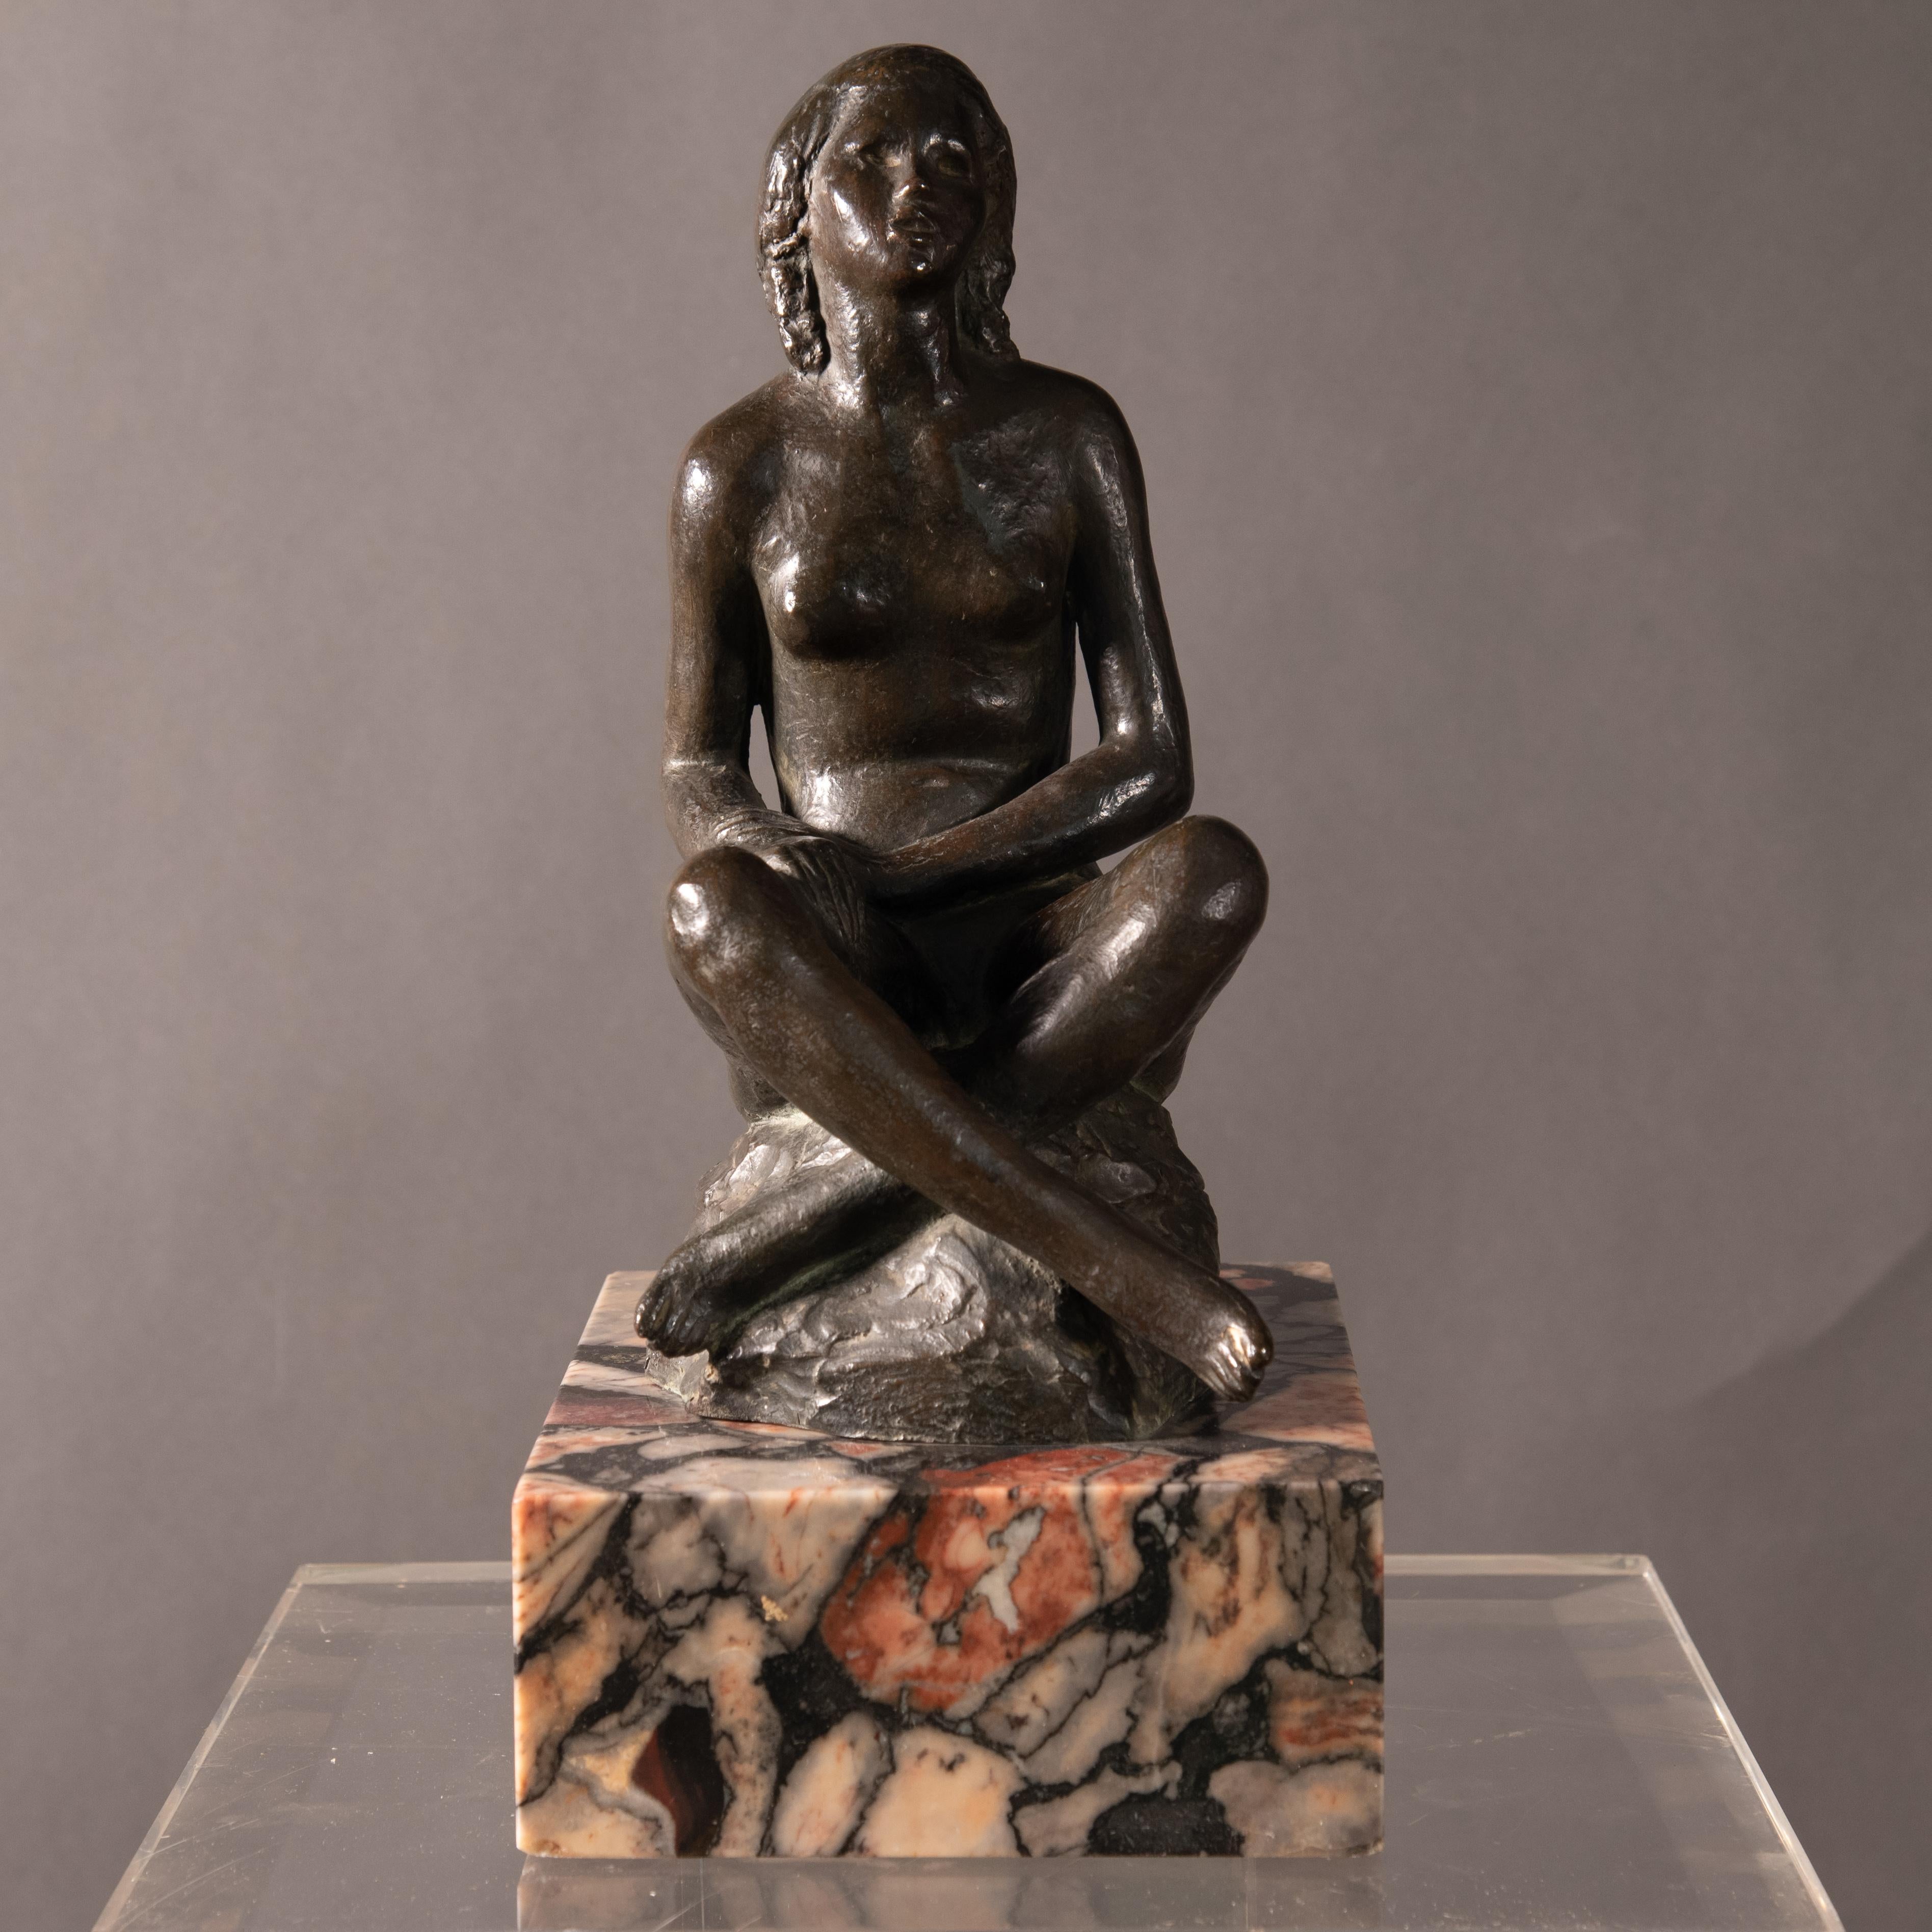 Wunderschöne italienische Skulptur, die eine sitzende Jungfrau darstellt.
Das Kunstwerk ruht auf einem quadratischen Marmorsockel
Signiert auf dem Sockel 